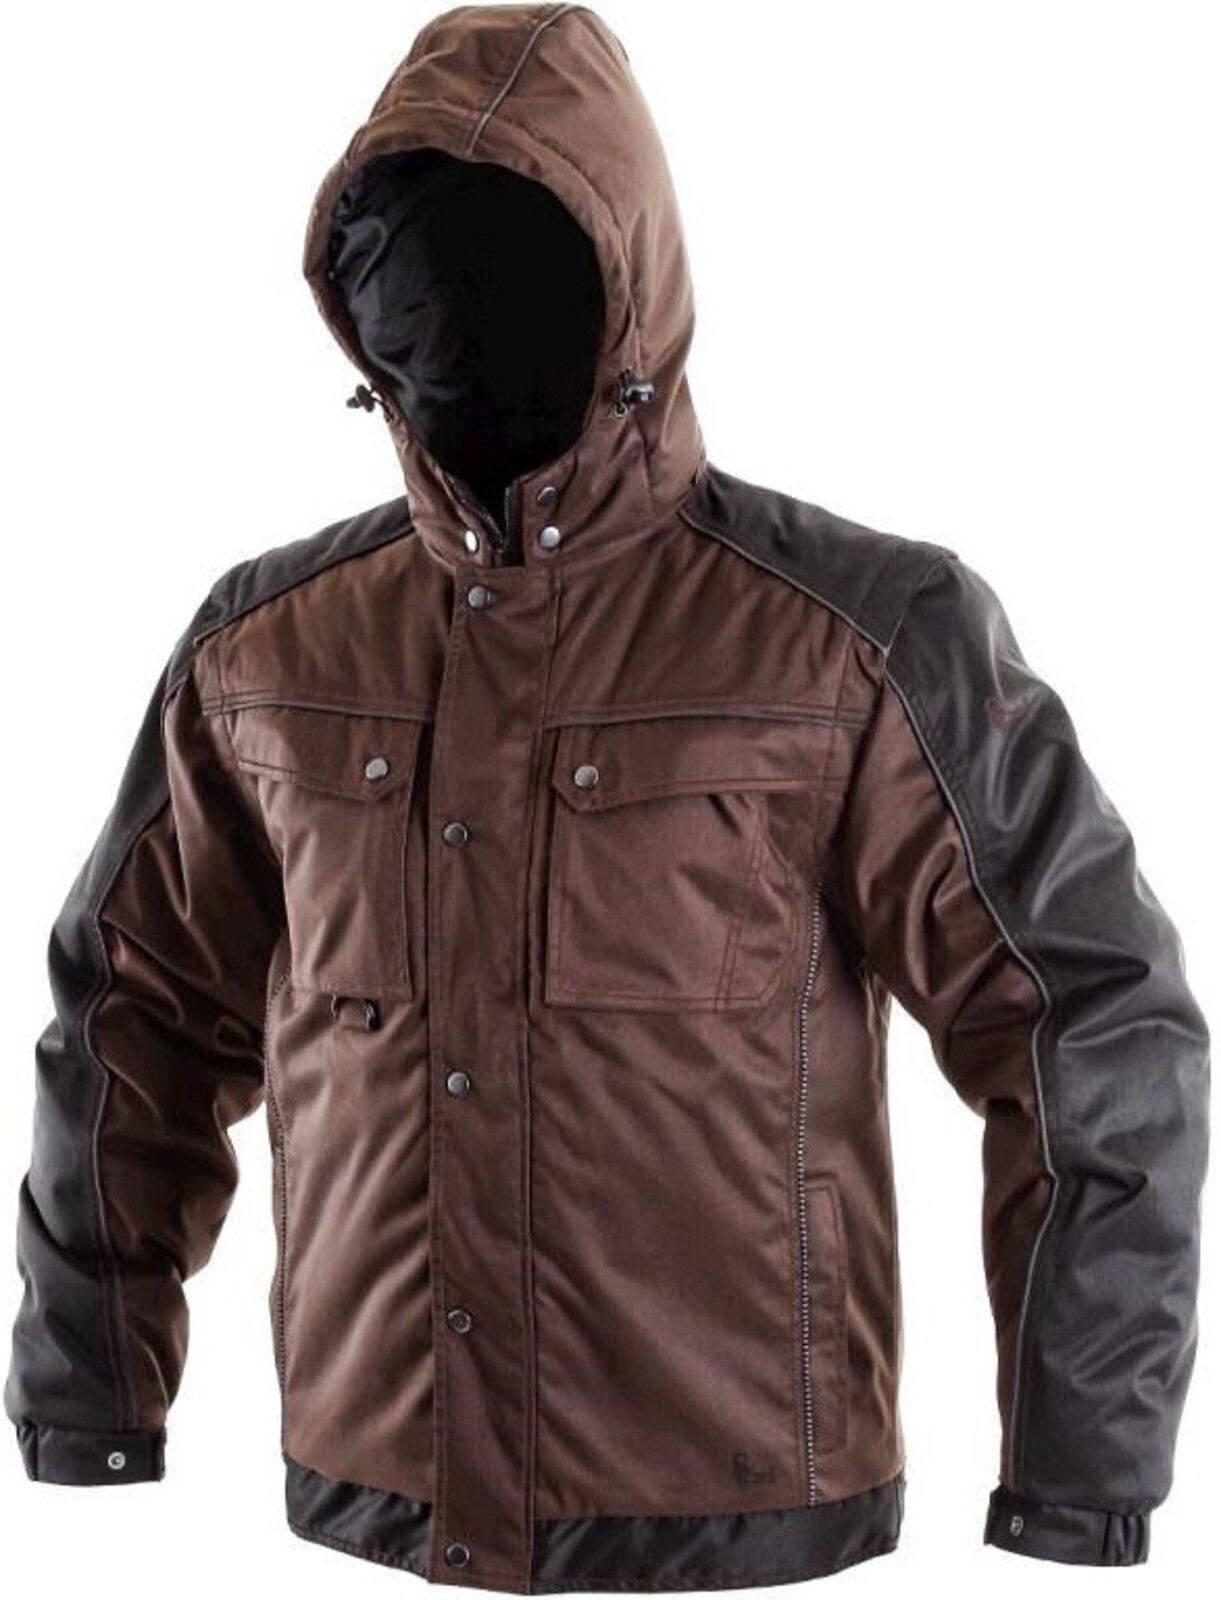 Pánska zimná bunda CXS Irvine 2v1 - veľkosť: L, farba: hnedá/čierna